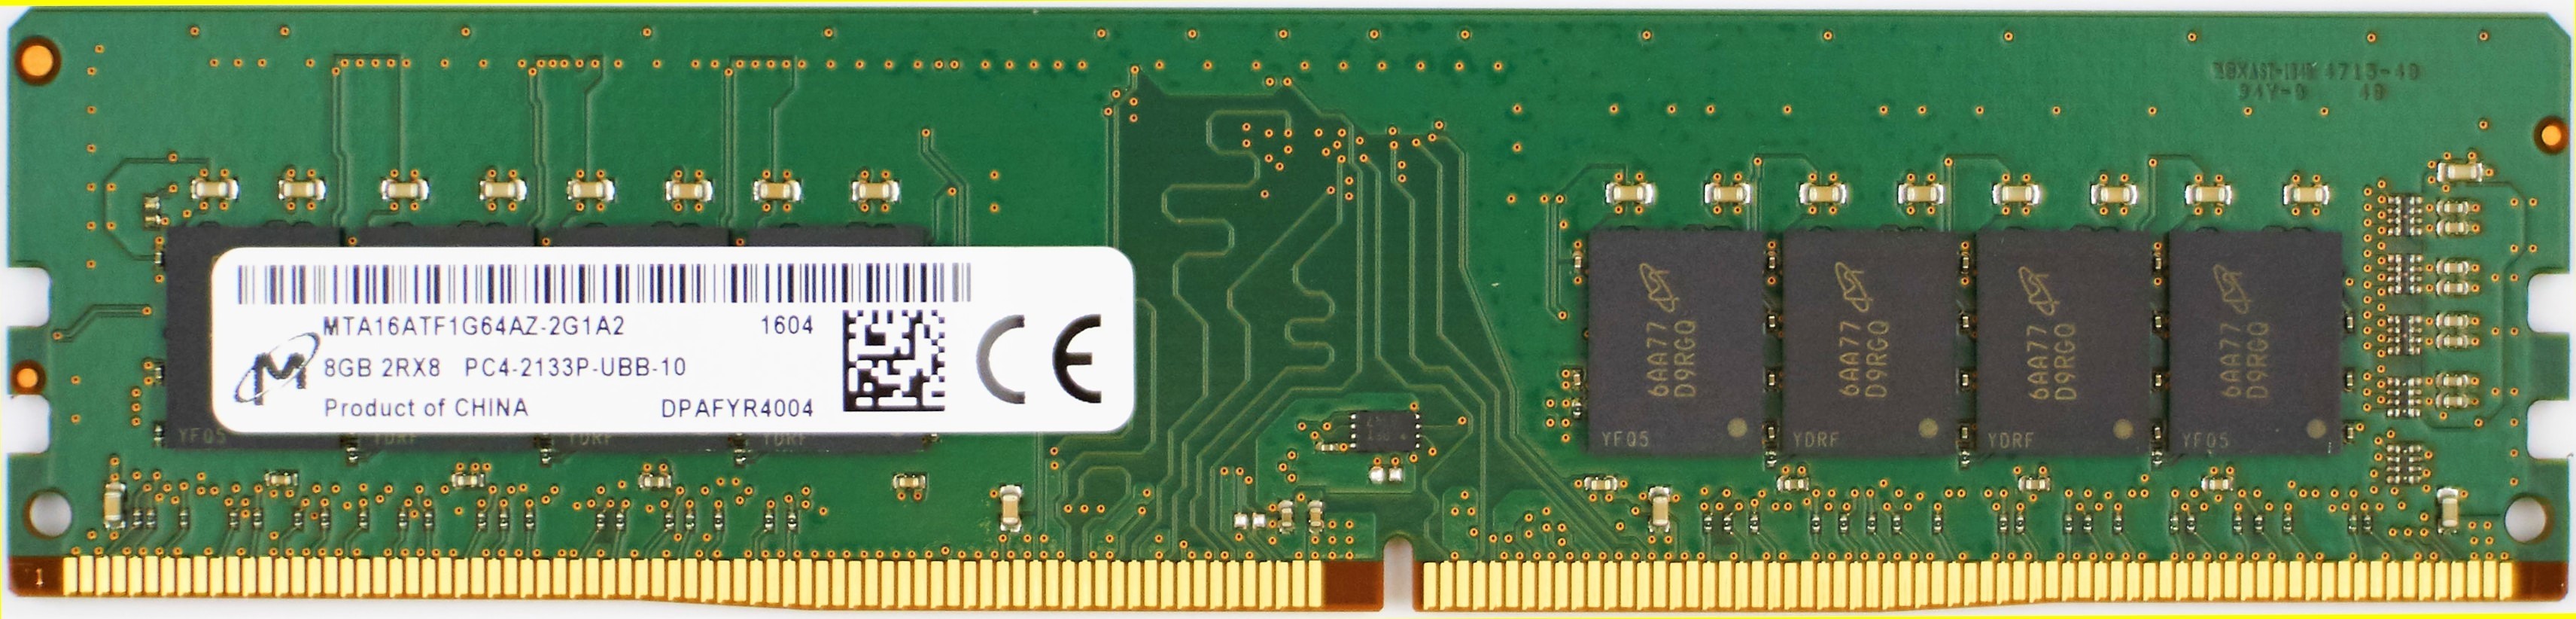 Micron - 8GB PC4-17000P-U (DDR4-2133Mhz, 2RX8)